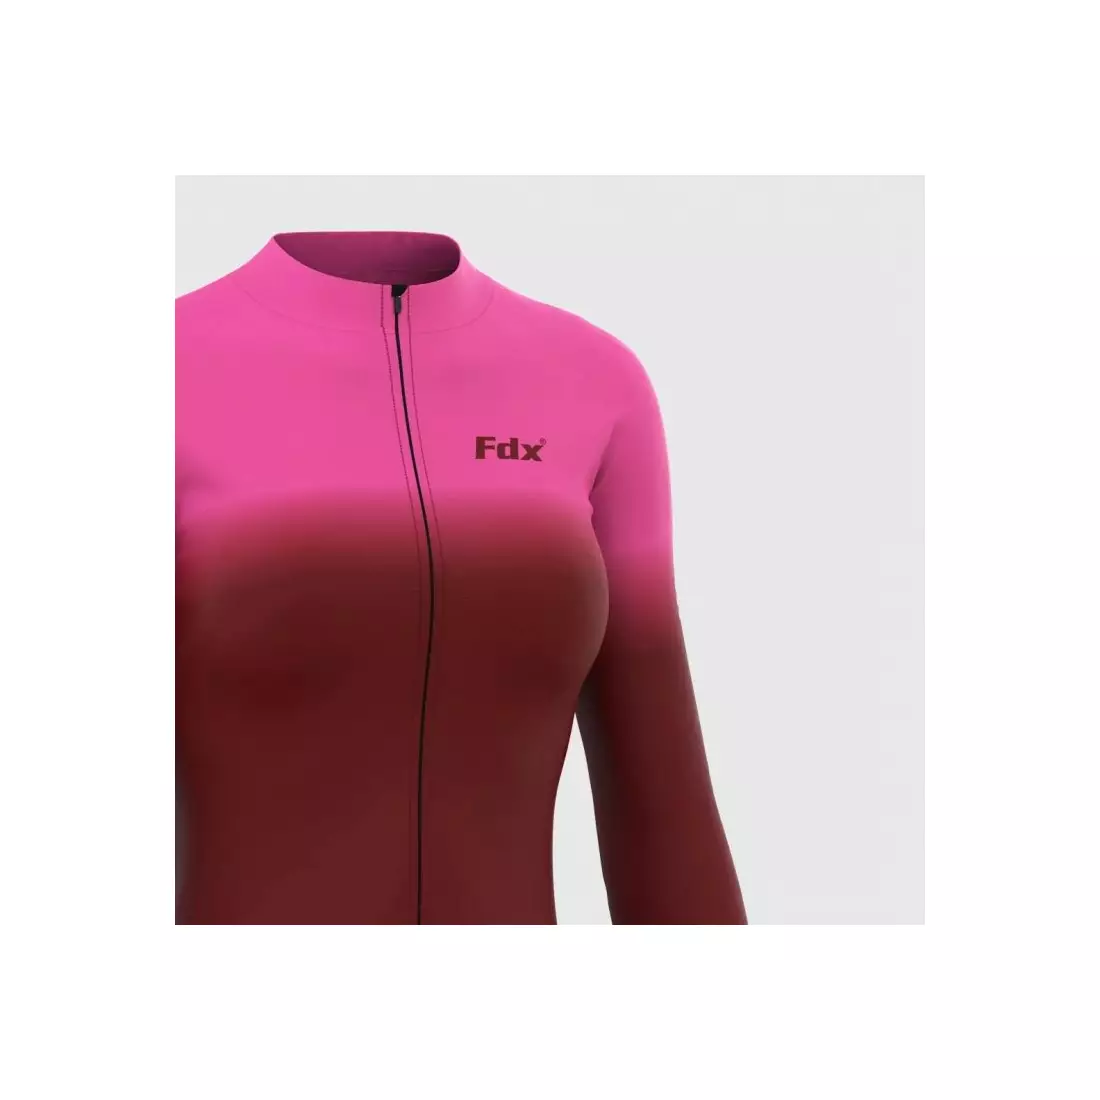 FDX 2100_01 women's insulated bicycle sweatshirt, maroon-pink